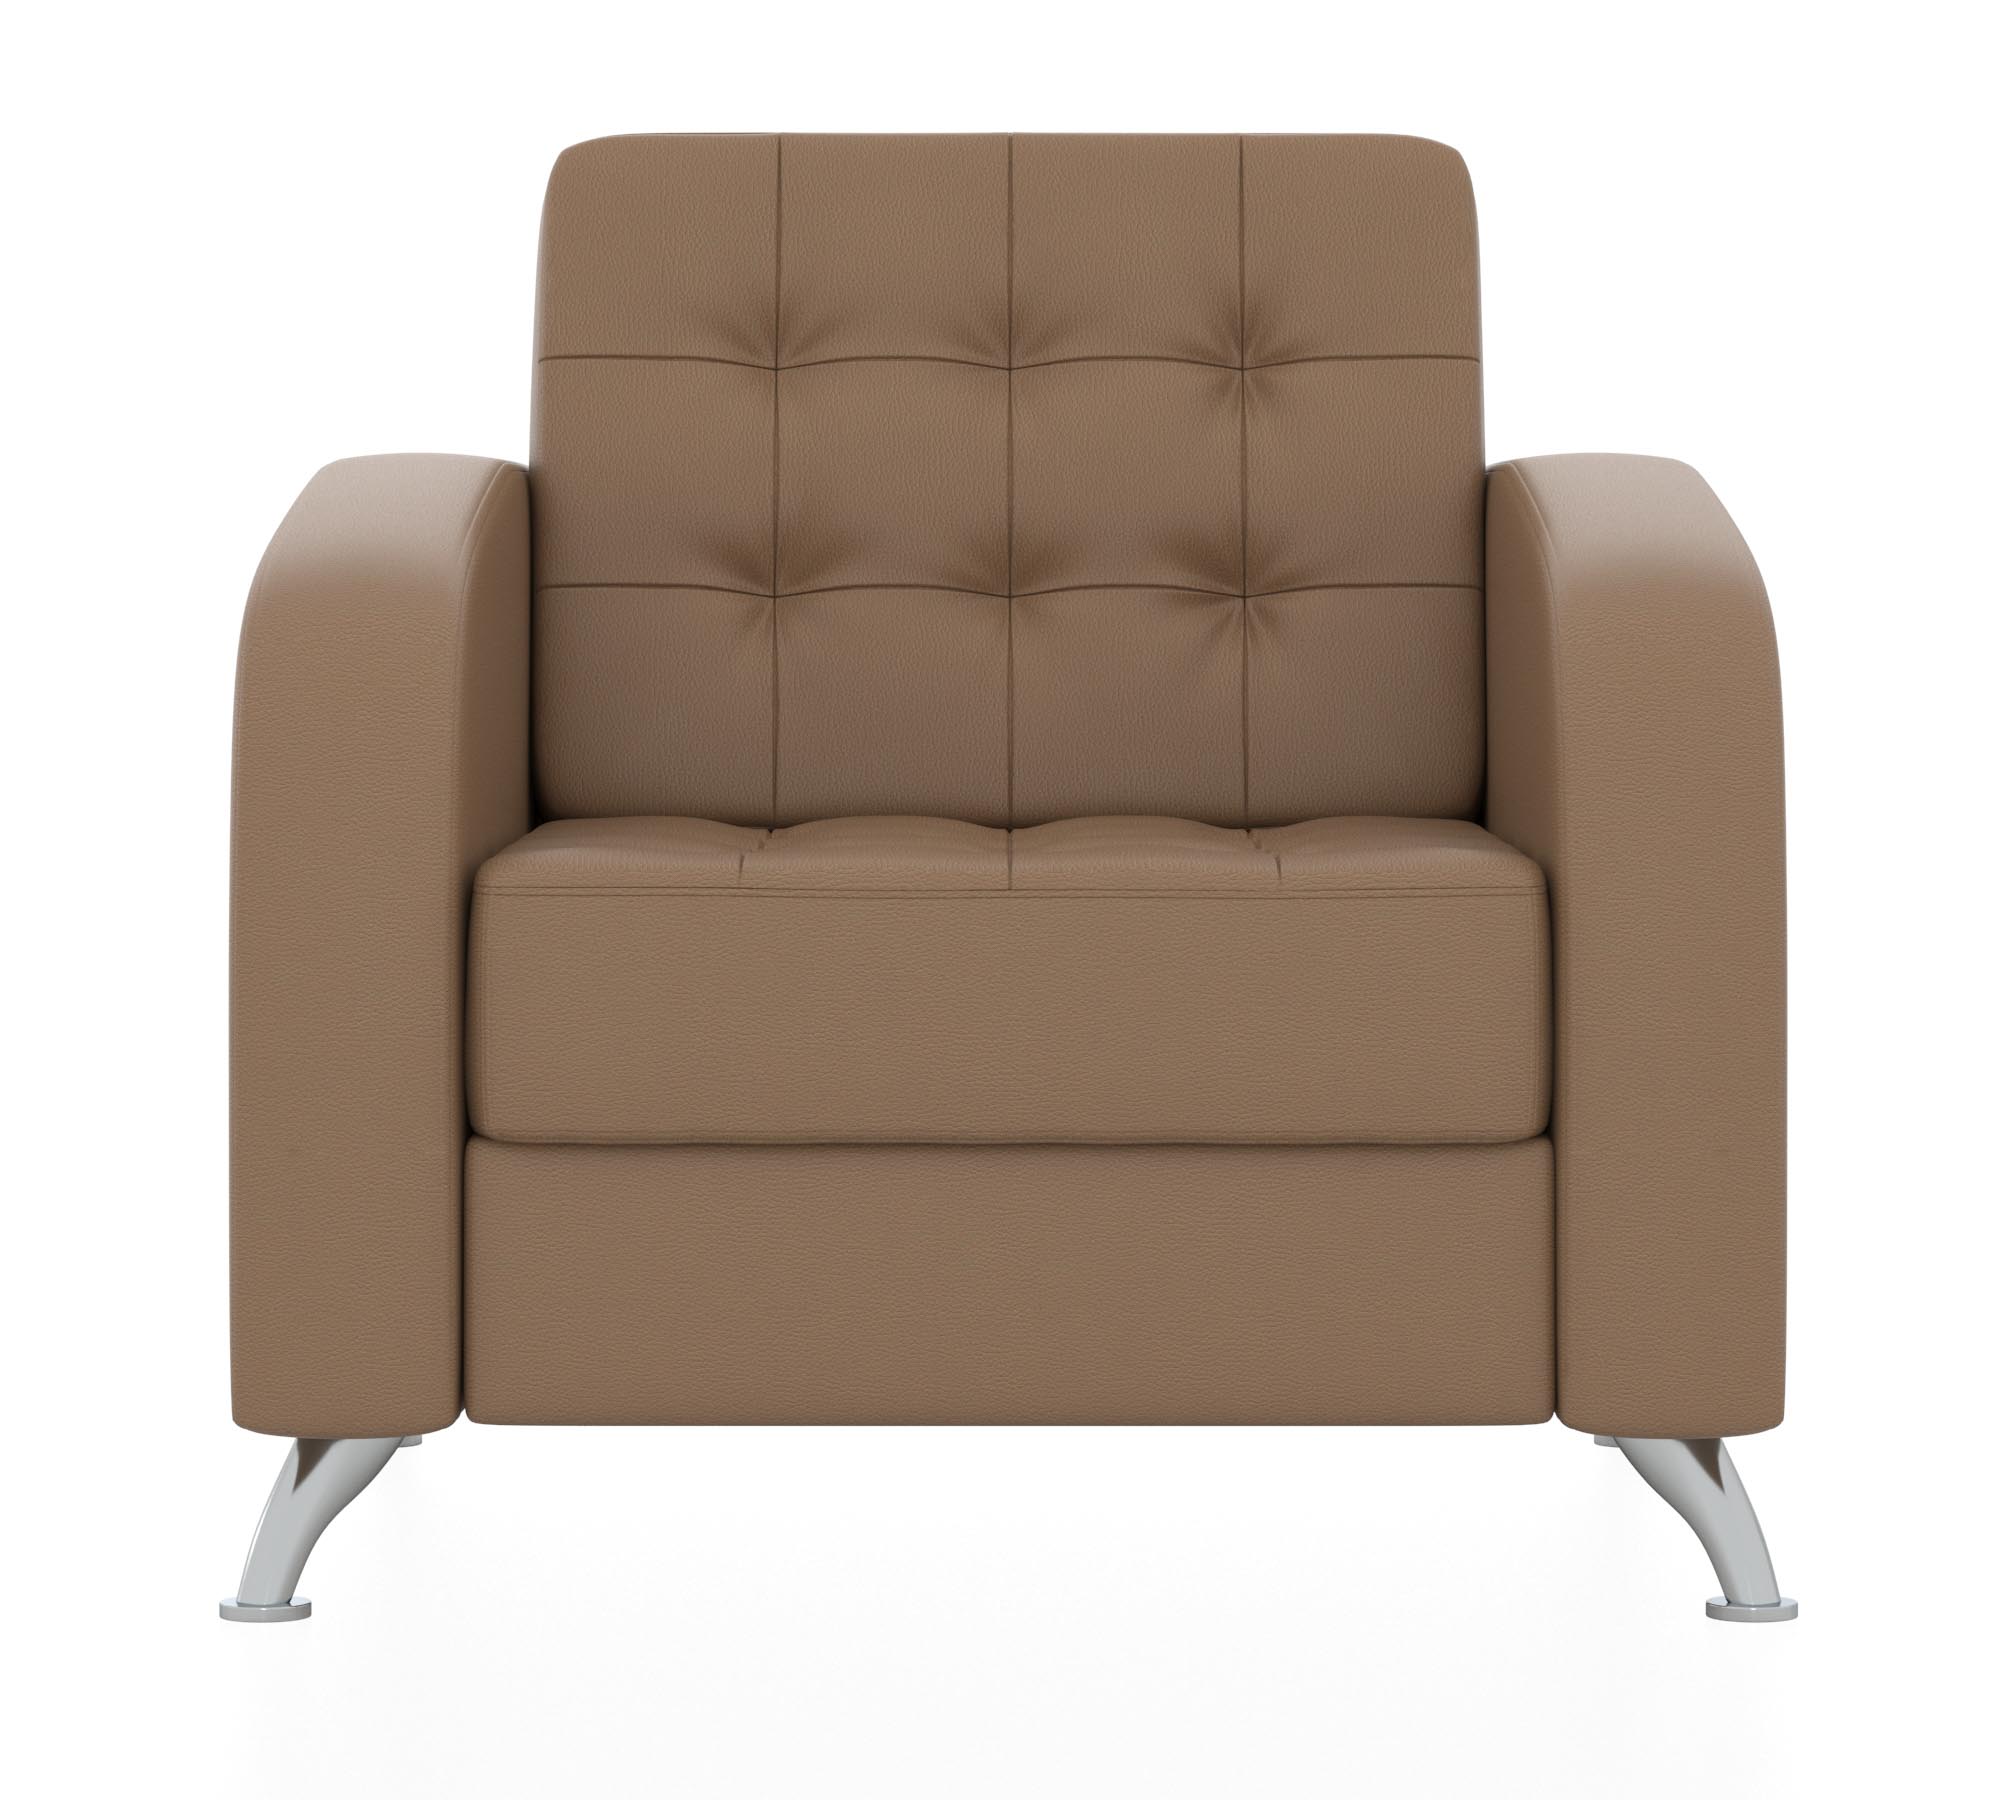 Кресло. Цвет коричневый. Обивка из кожзама (euroline 923).